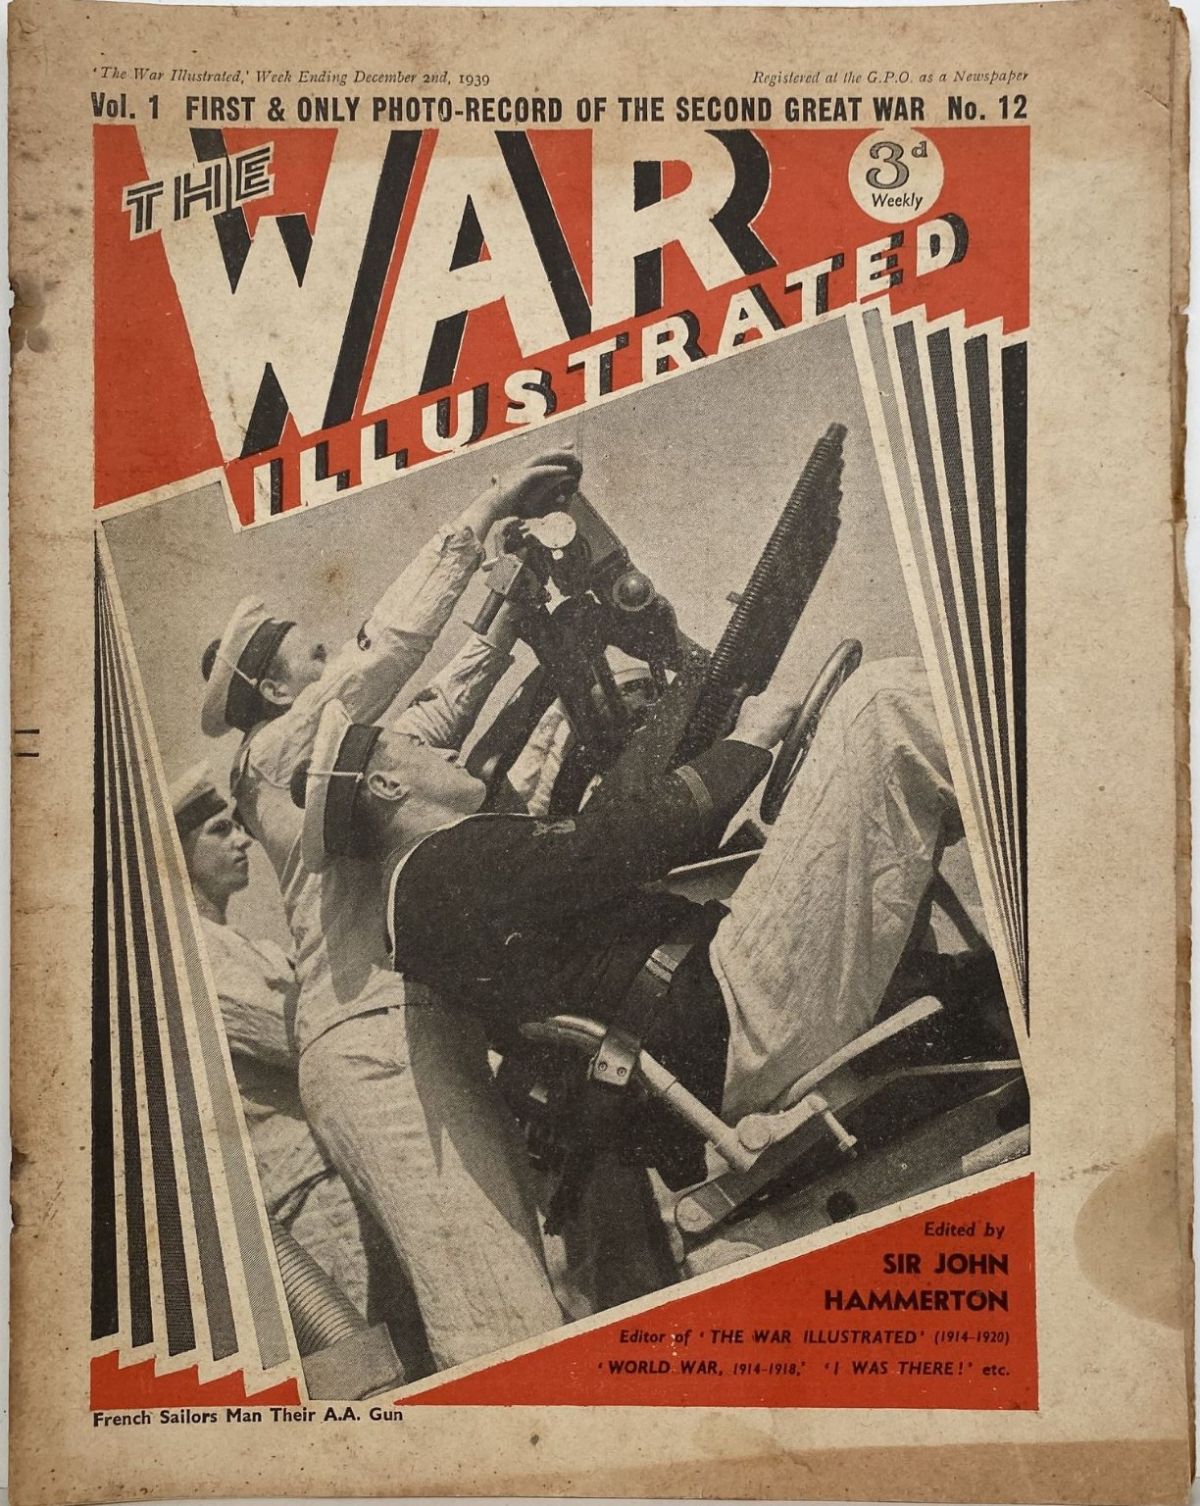 THE WAR ILLUSTRATED - Vol 1, No 12, 2nd Dec 1939